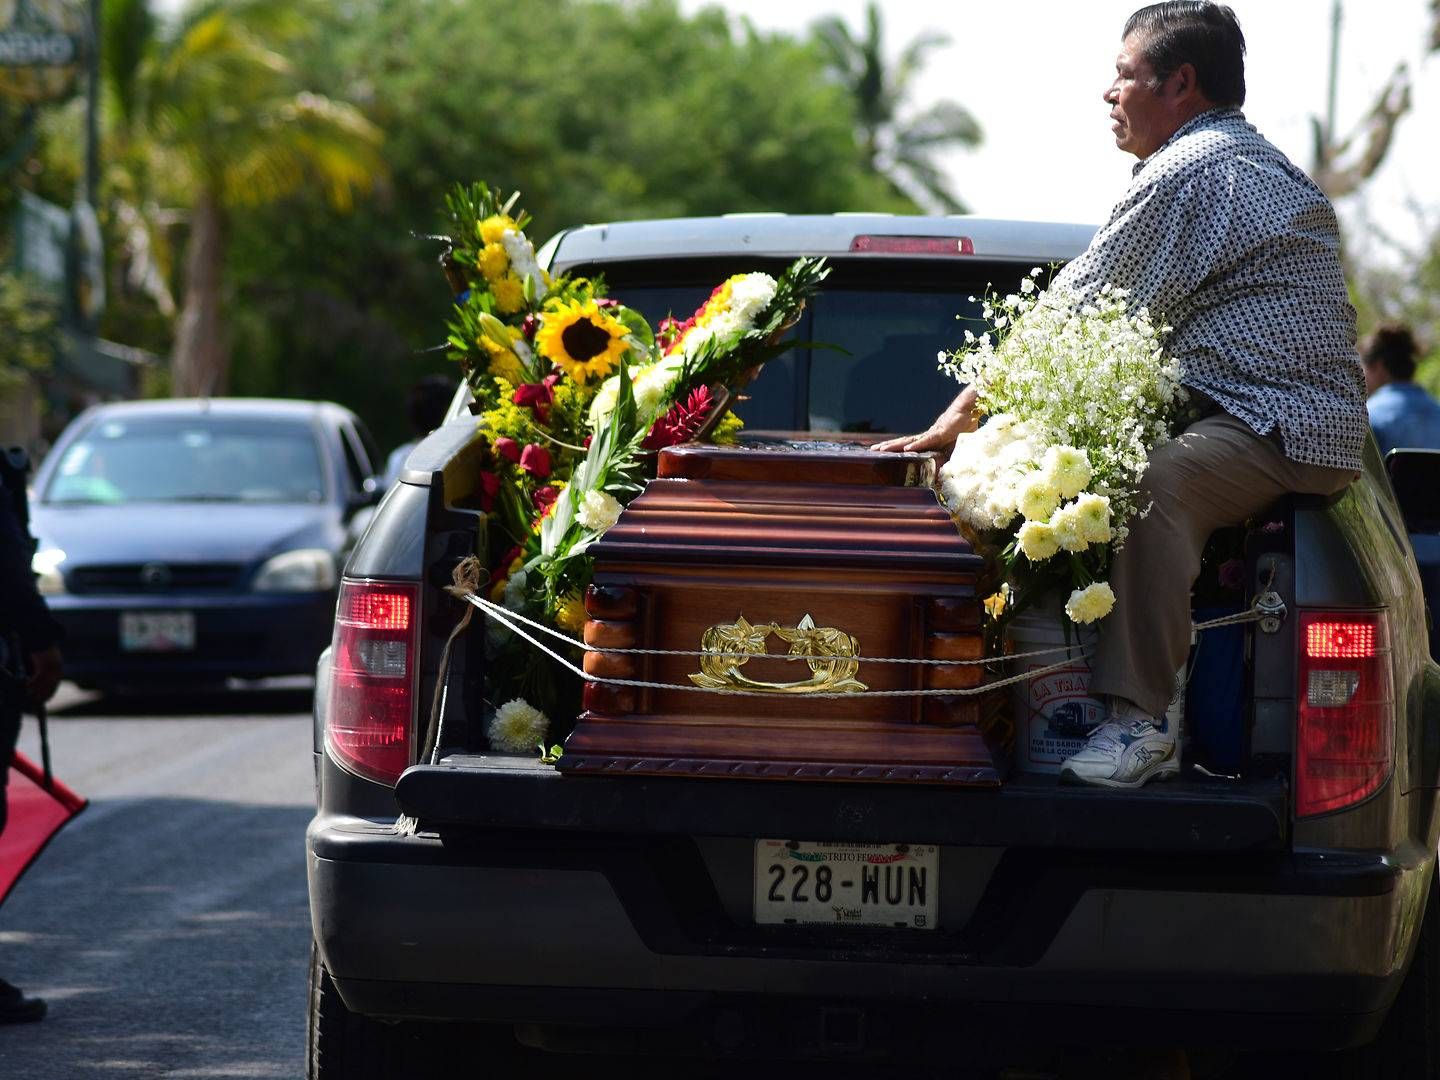 Kisten med journalist Jorge Ruiz Vázquez, der blev fundet dræbt i sit hjem fredag, køres bort | Foto: Oscar Martinez / Reuters / Ritzau Scanpix